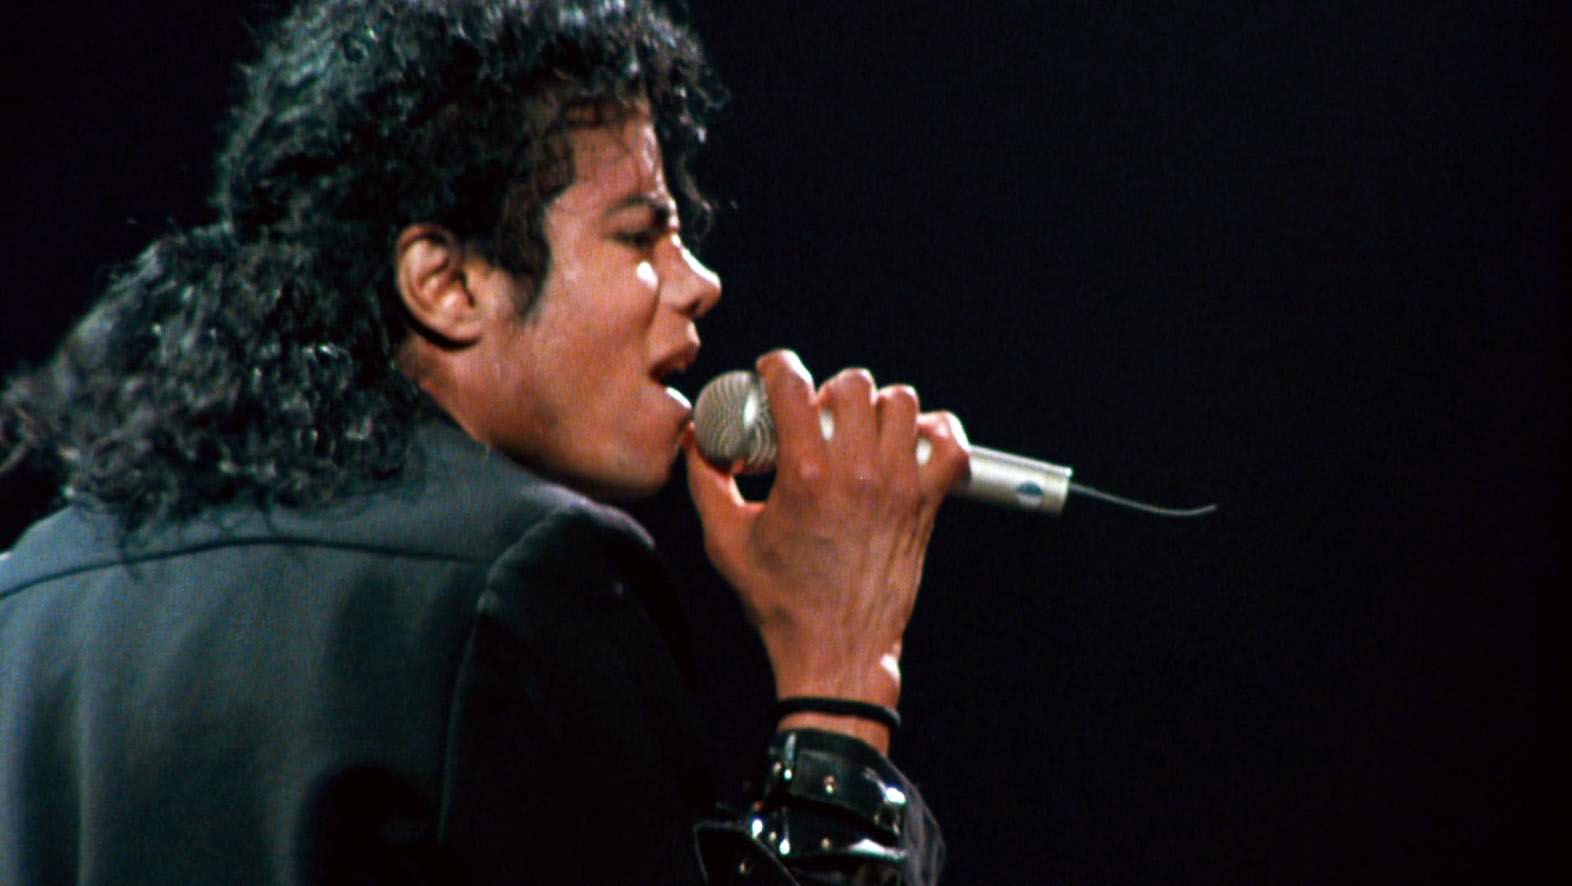 Michael-Jackson-Long-Live-The-King-michael-joseph-jackson-tribute-37967239-1572-886.jpg